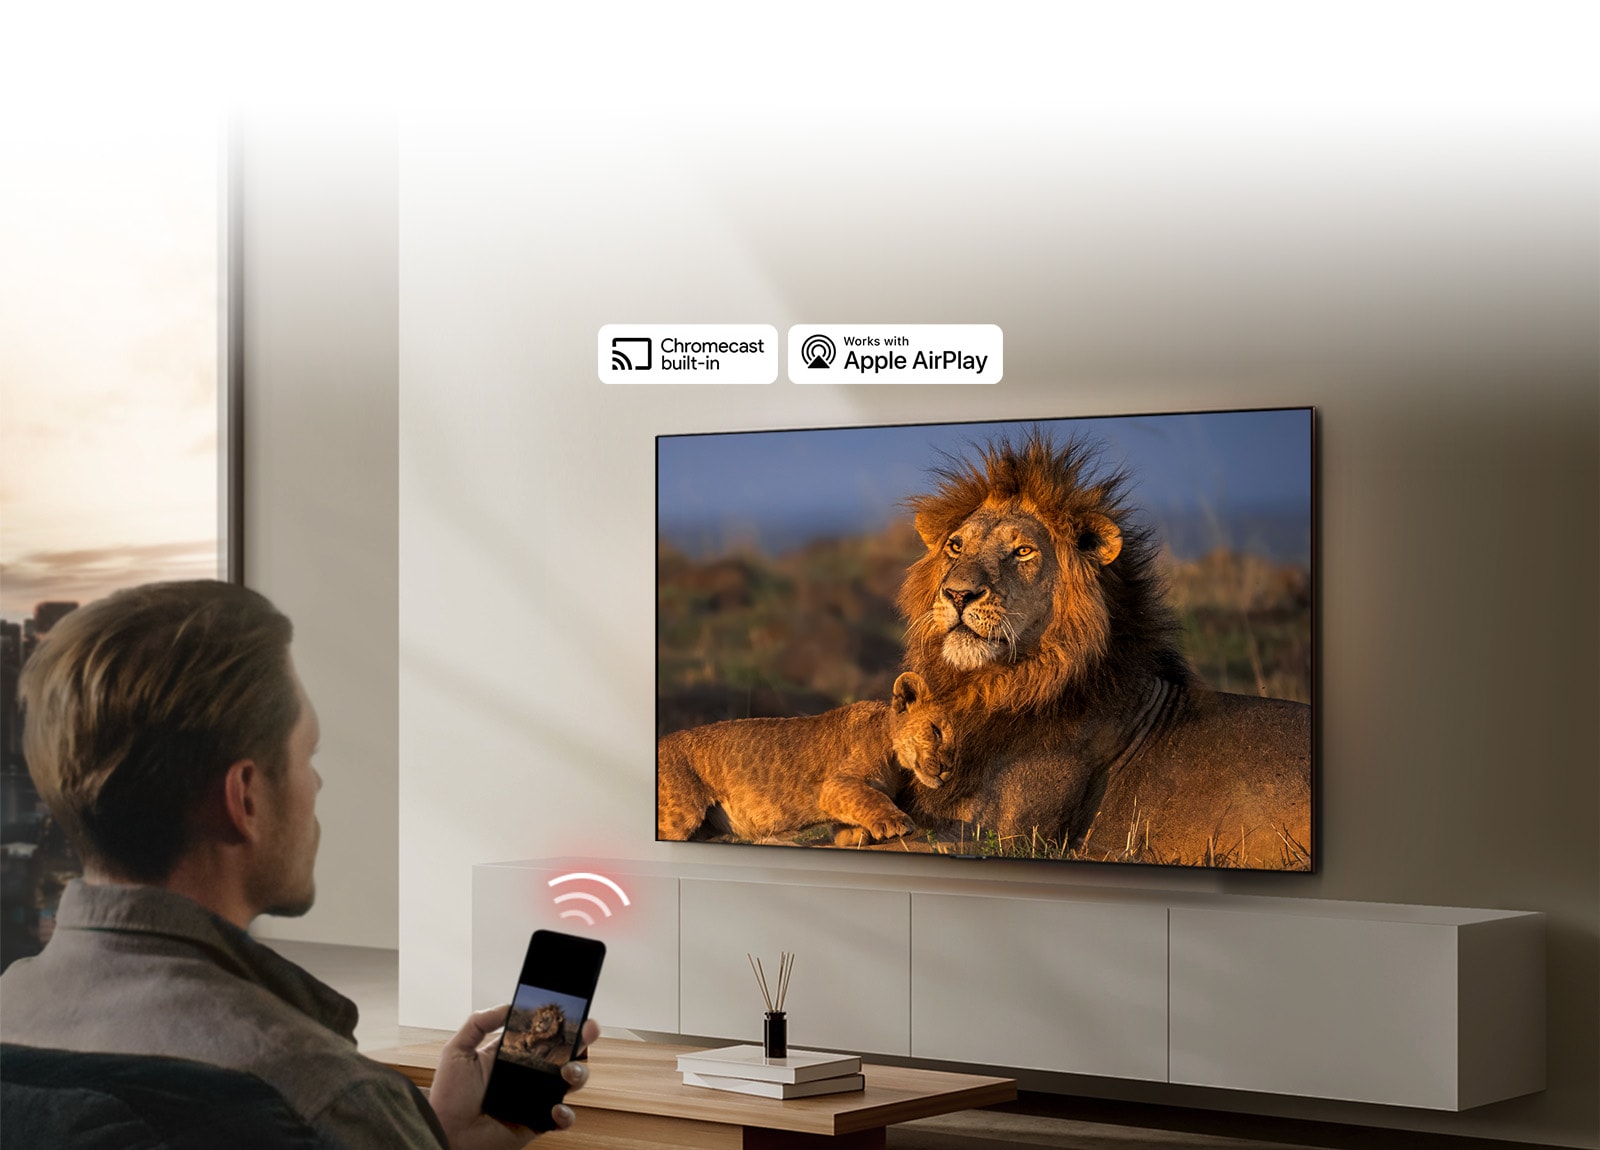 LG TV מותקנת על קיר בסלון, מציגה אריה וגור אריות. אדם יושב בחזית עם טלפון סלולרי בידו, שבו מוצגת אותה תמונה של אריות. גרפיקה של שלושה פסים מעוקלים באדום ניאון שמצביעים לכיוון הטלוויזיה מוצגת ממש מעל הטלפון הסלולרי.